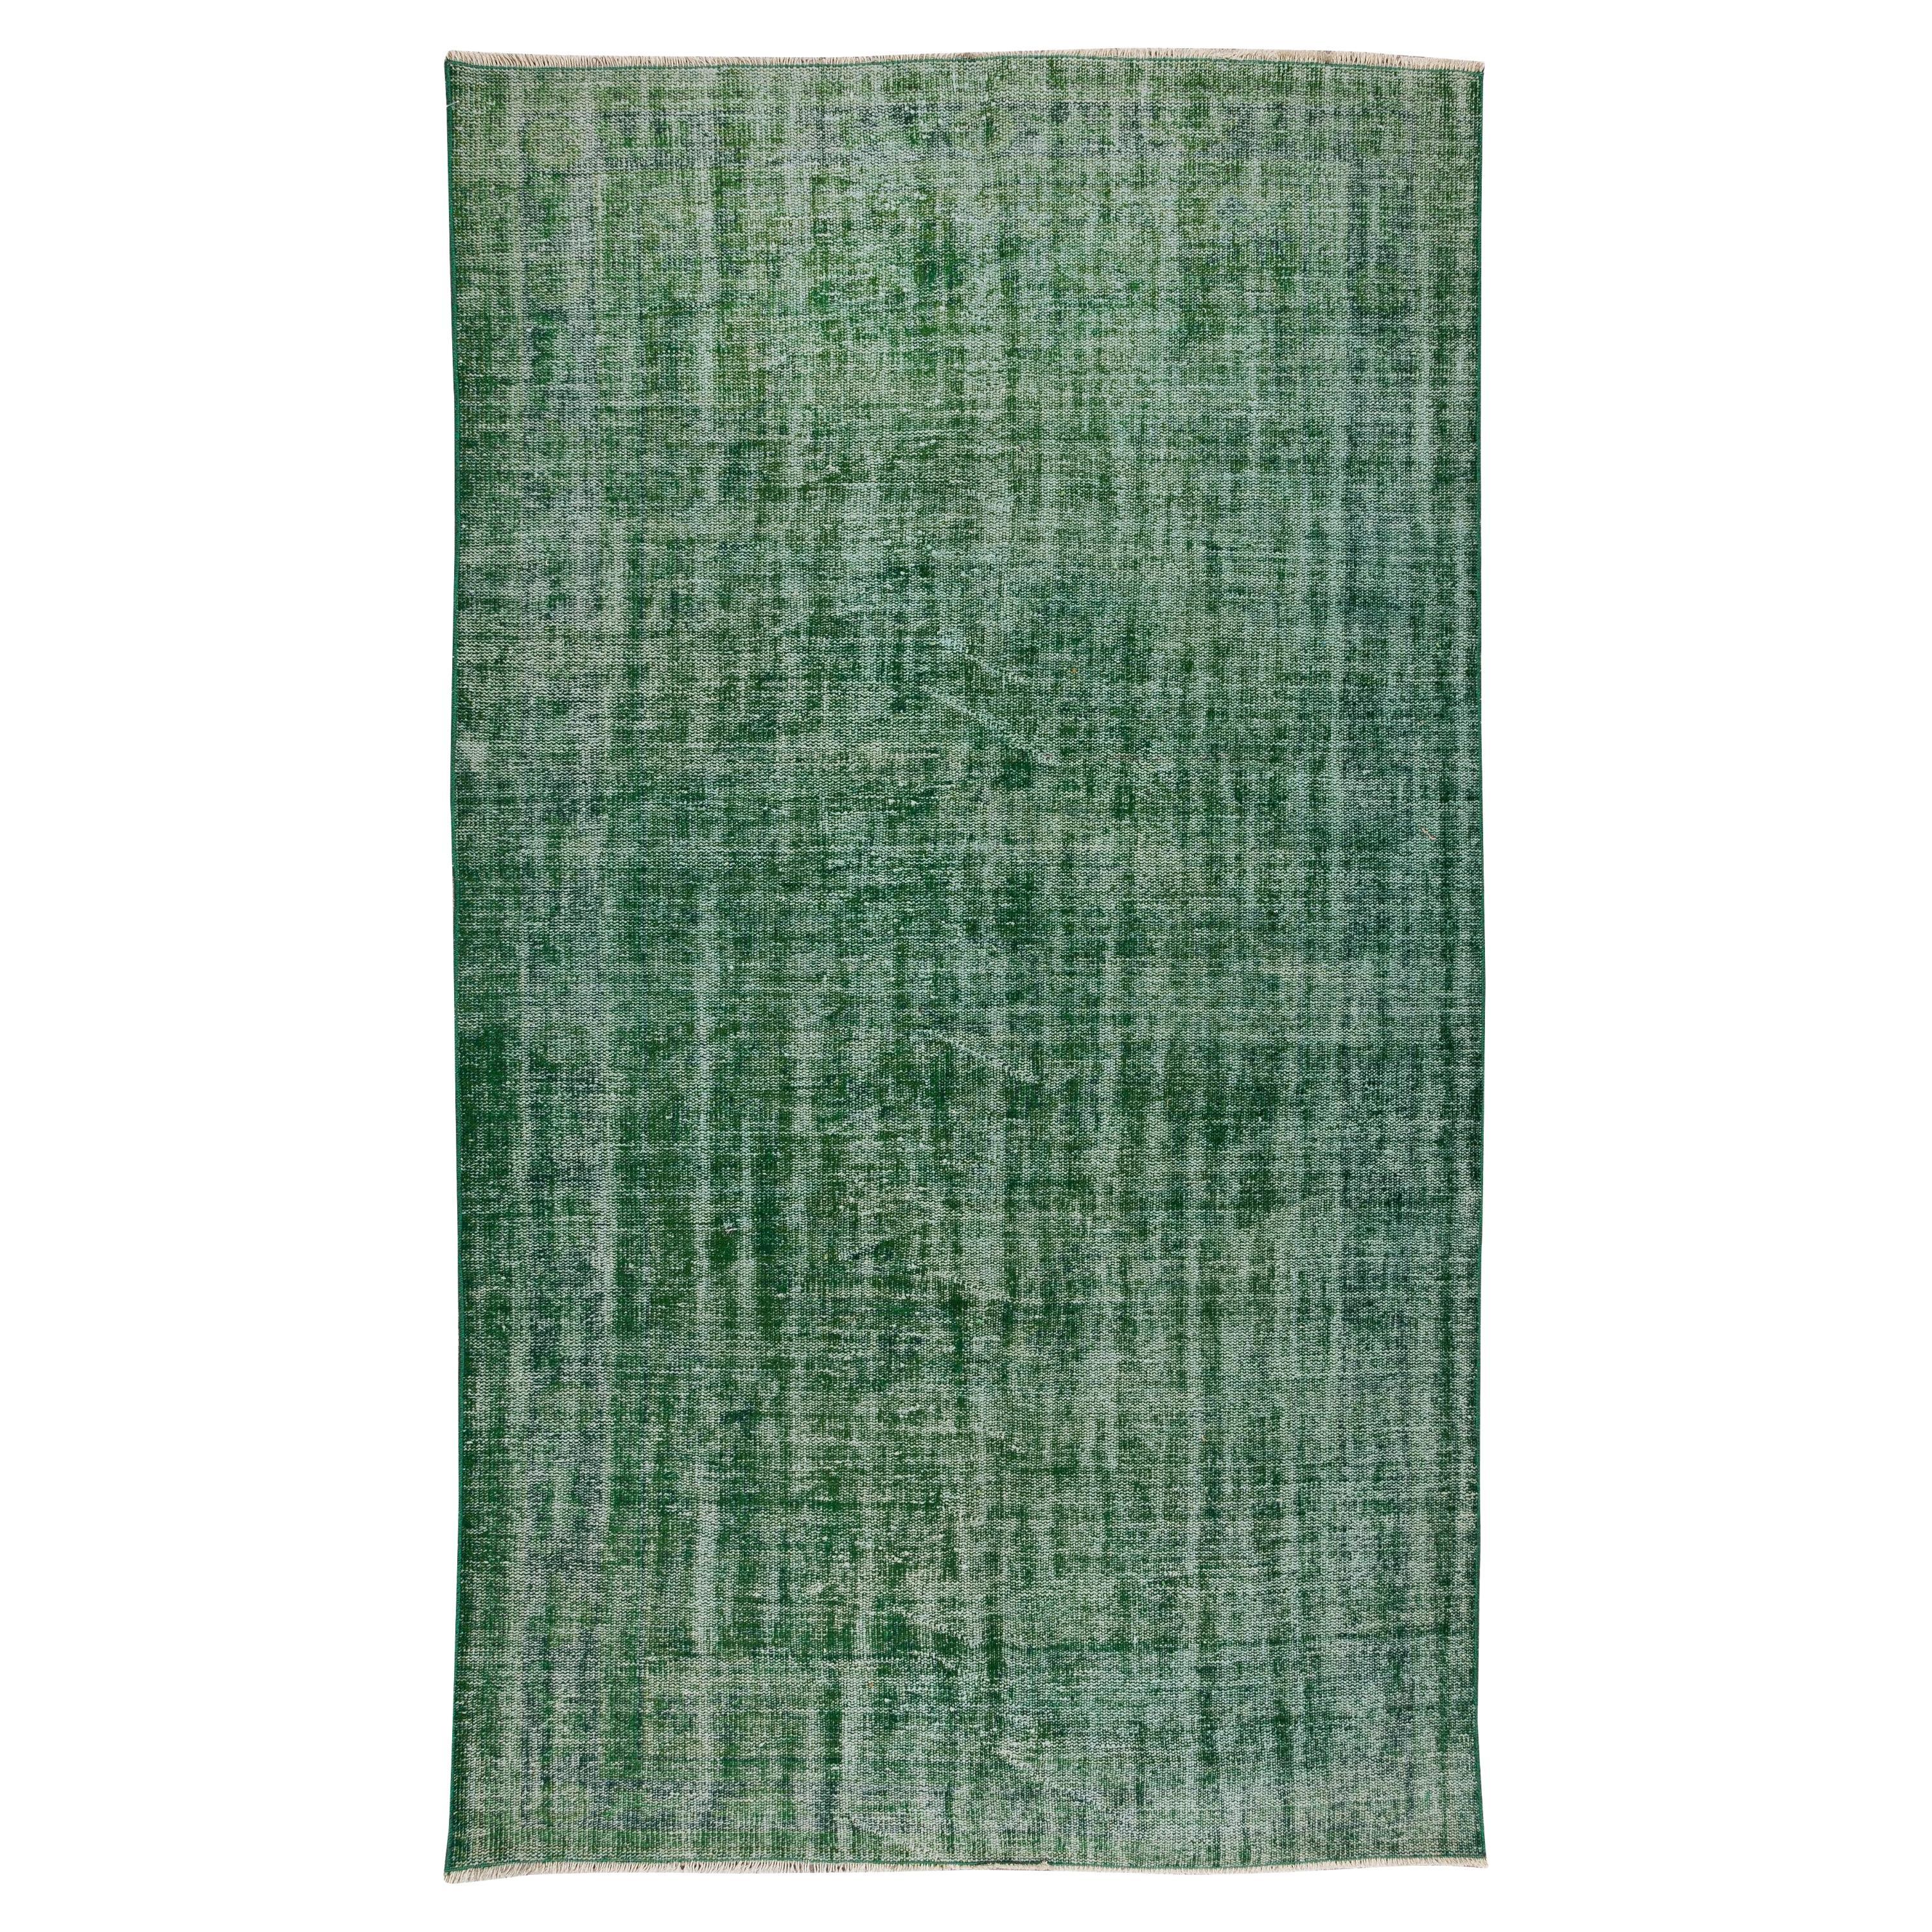 5.7x9.8 Ft Handgefertigter Vintage Türkischer Teppich, Einfarbig Grün Contemporary Wollteppich